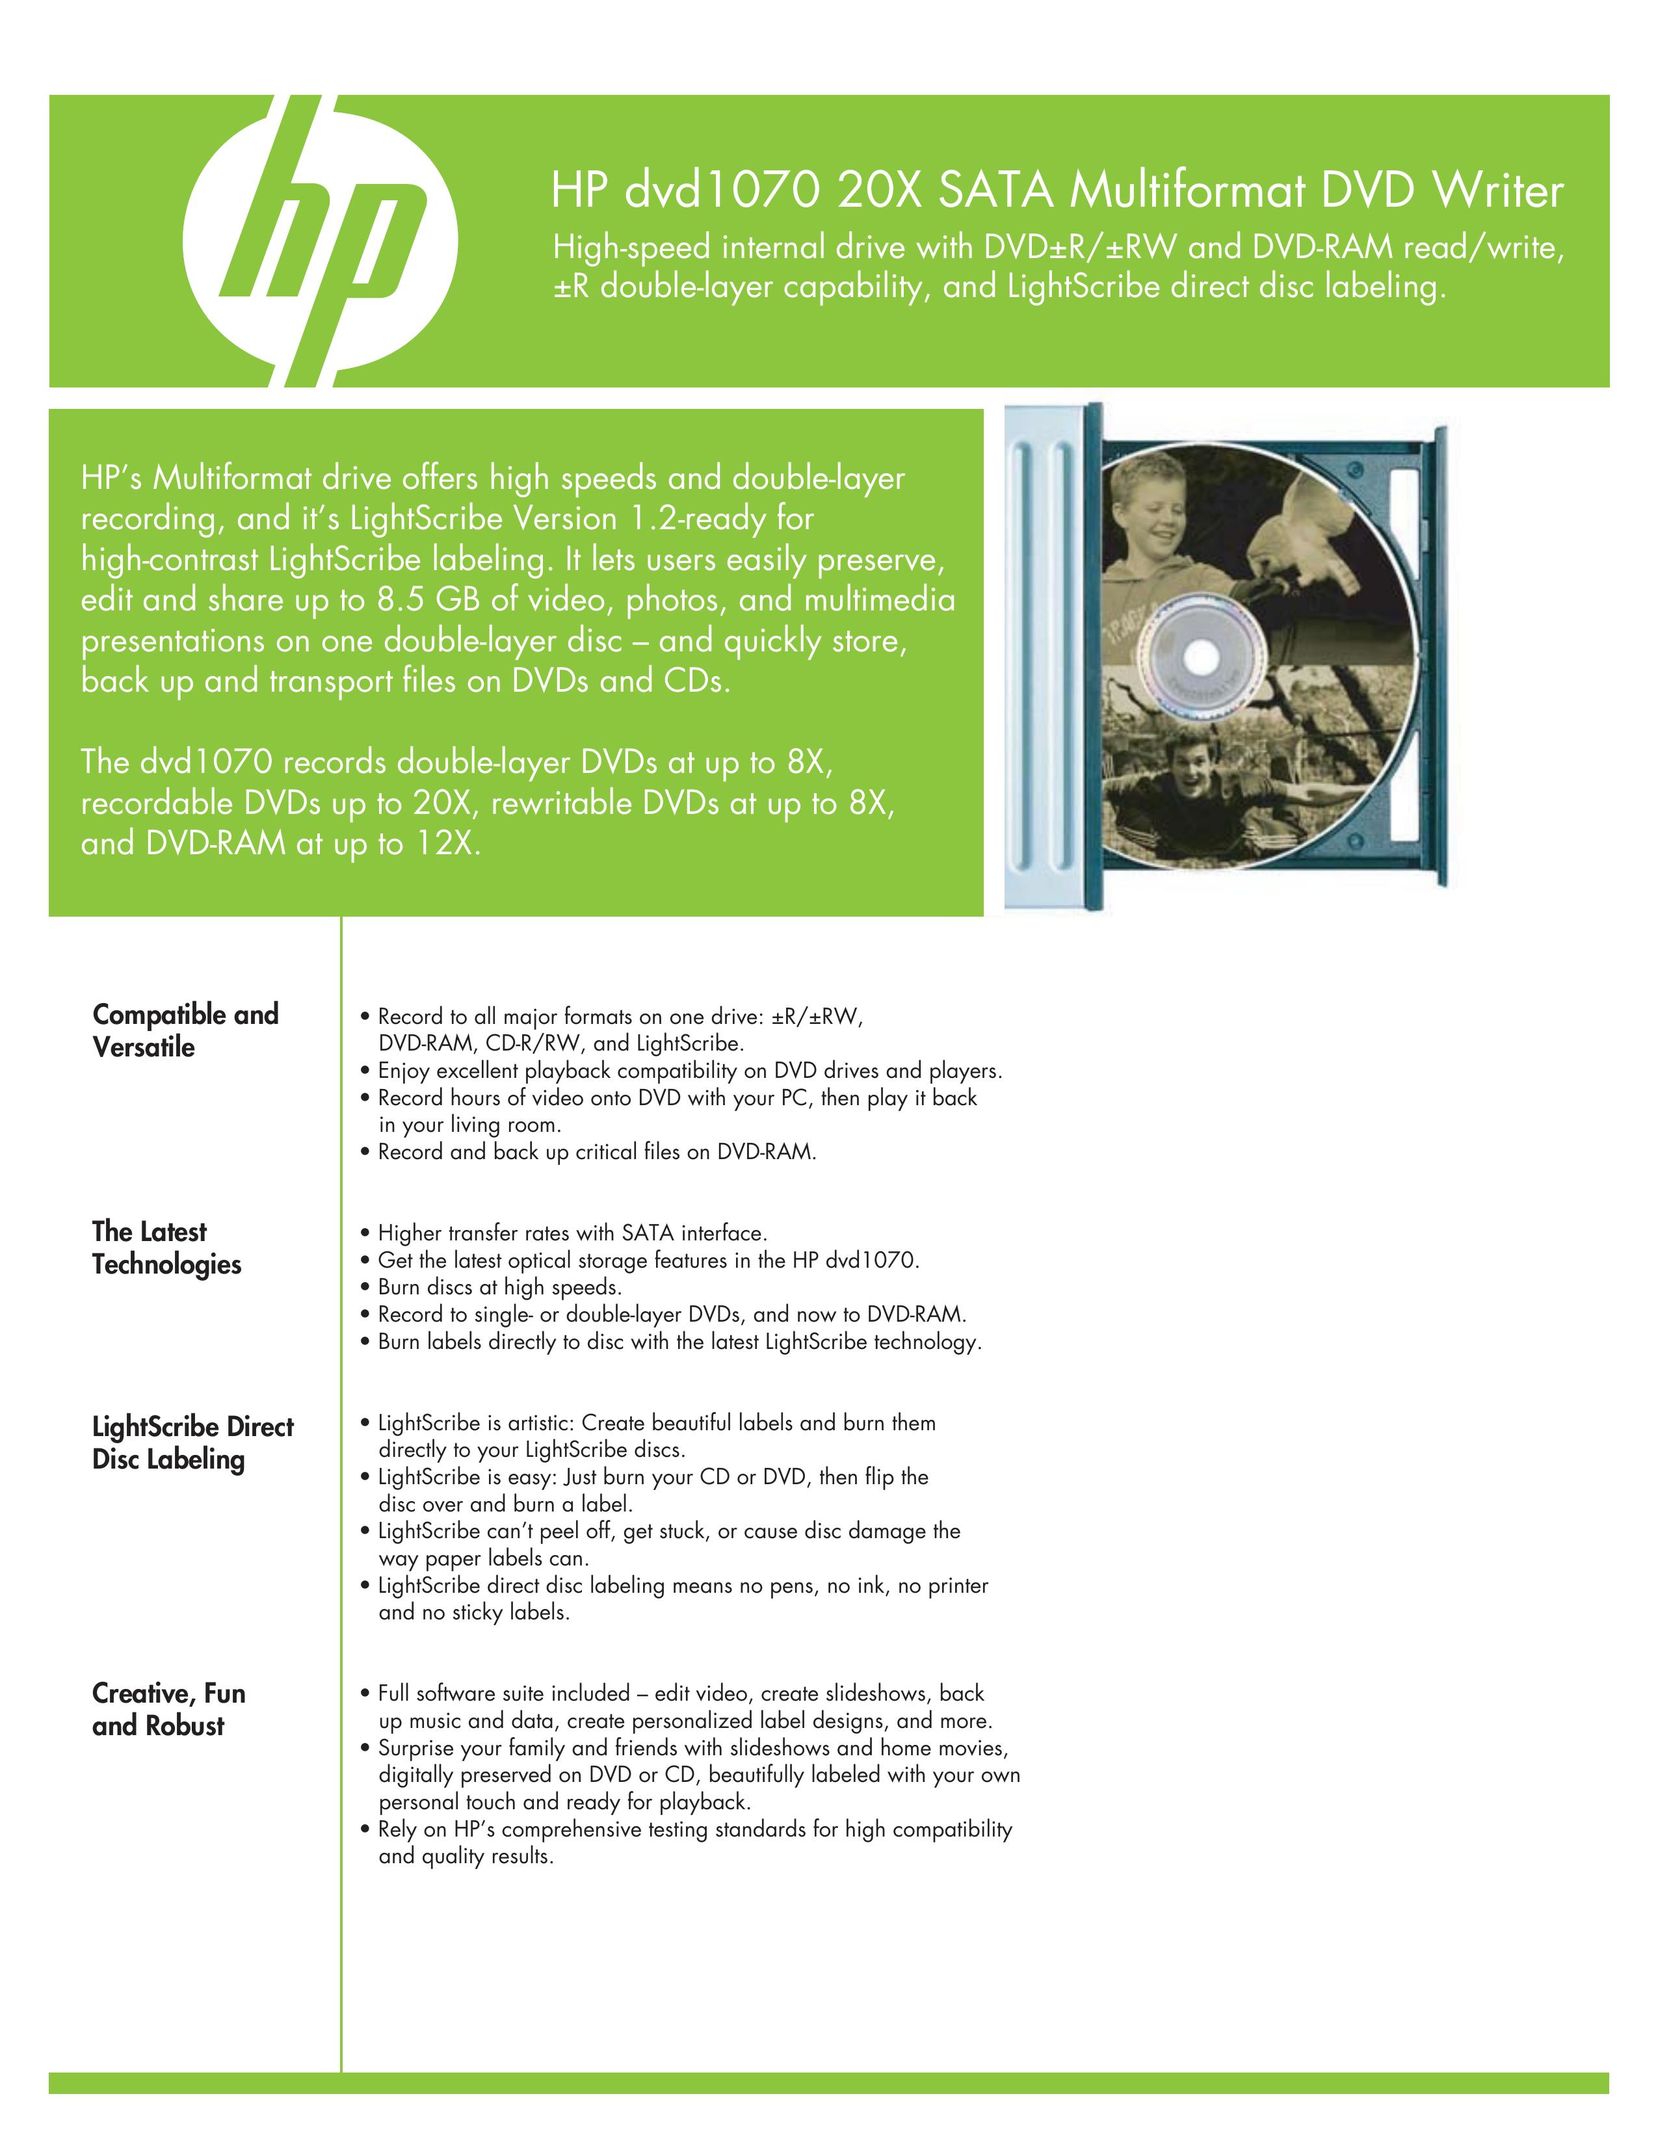 HP (Hewlett-Packard) 326431 Computer Accessories User Manual